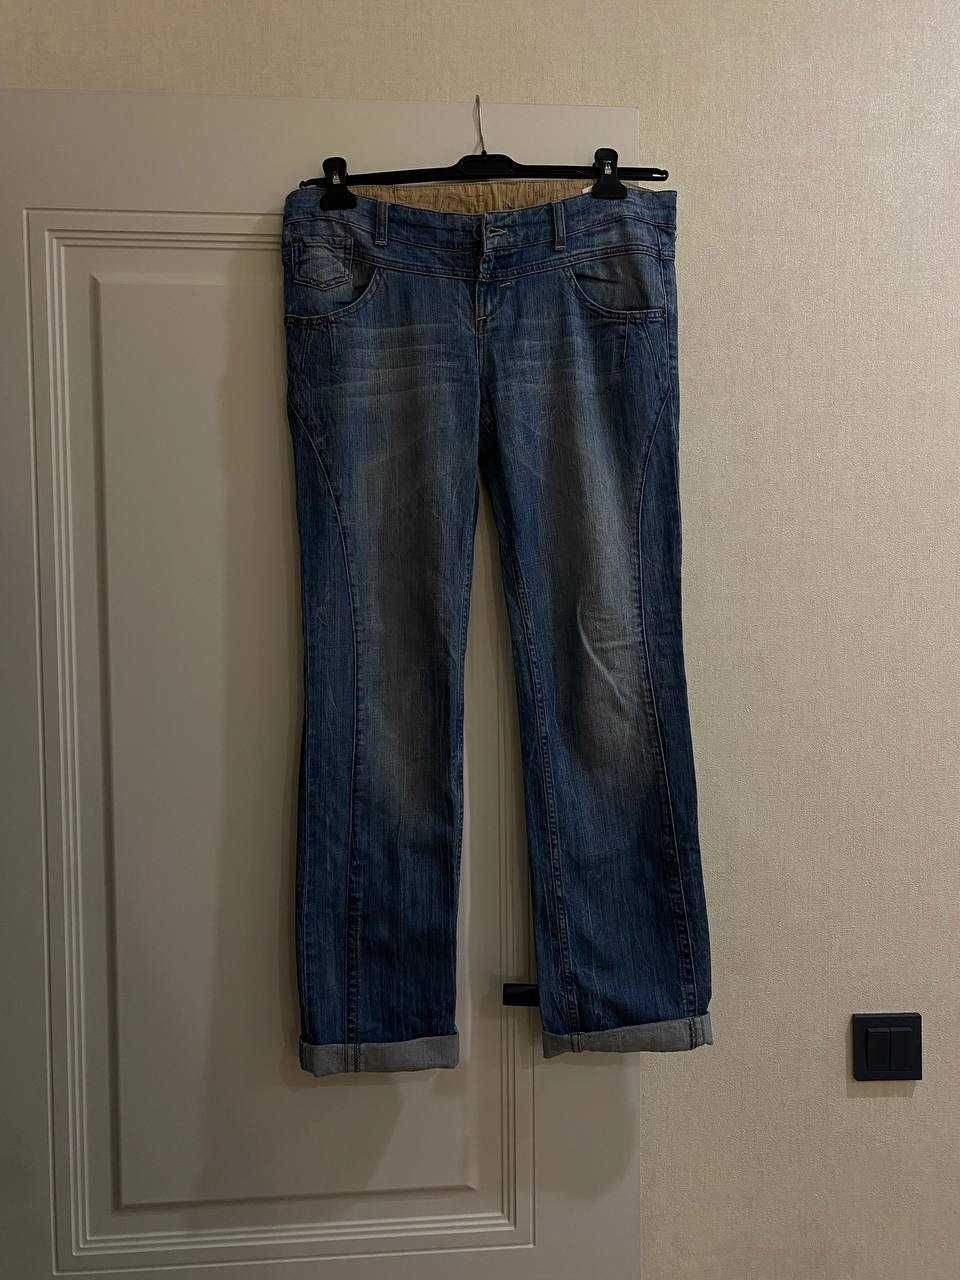 Бредовые джинсы отличного качества 38-40 размеры, цена символическая